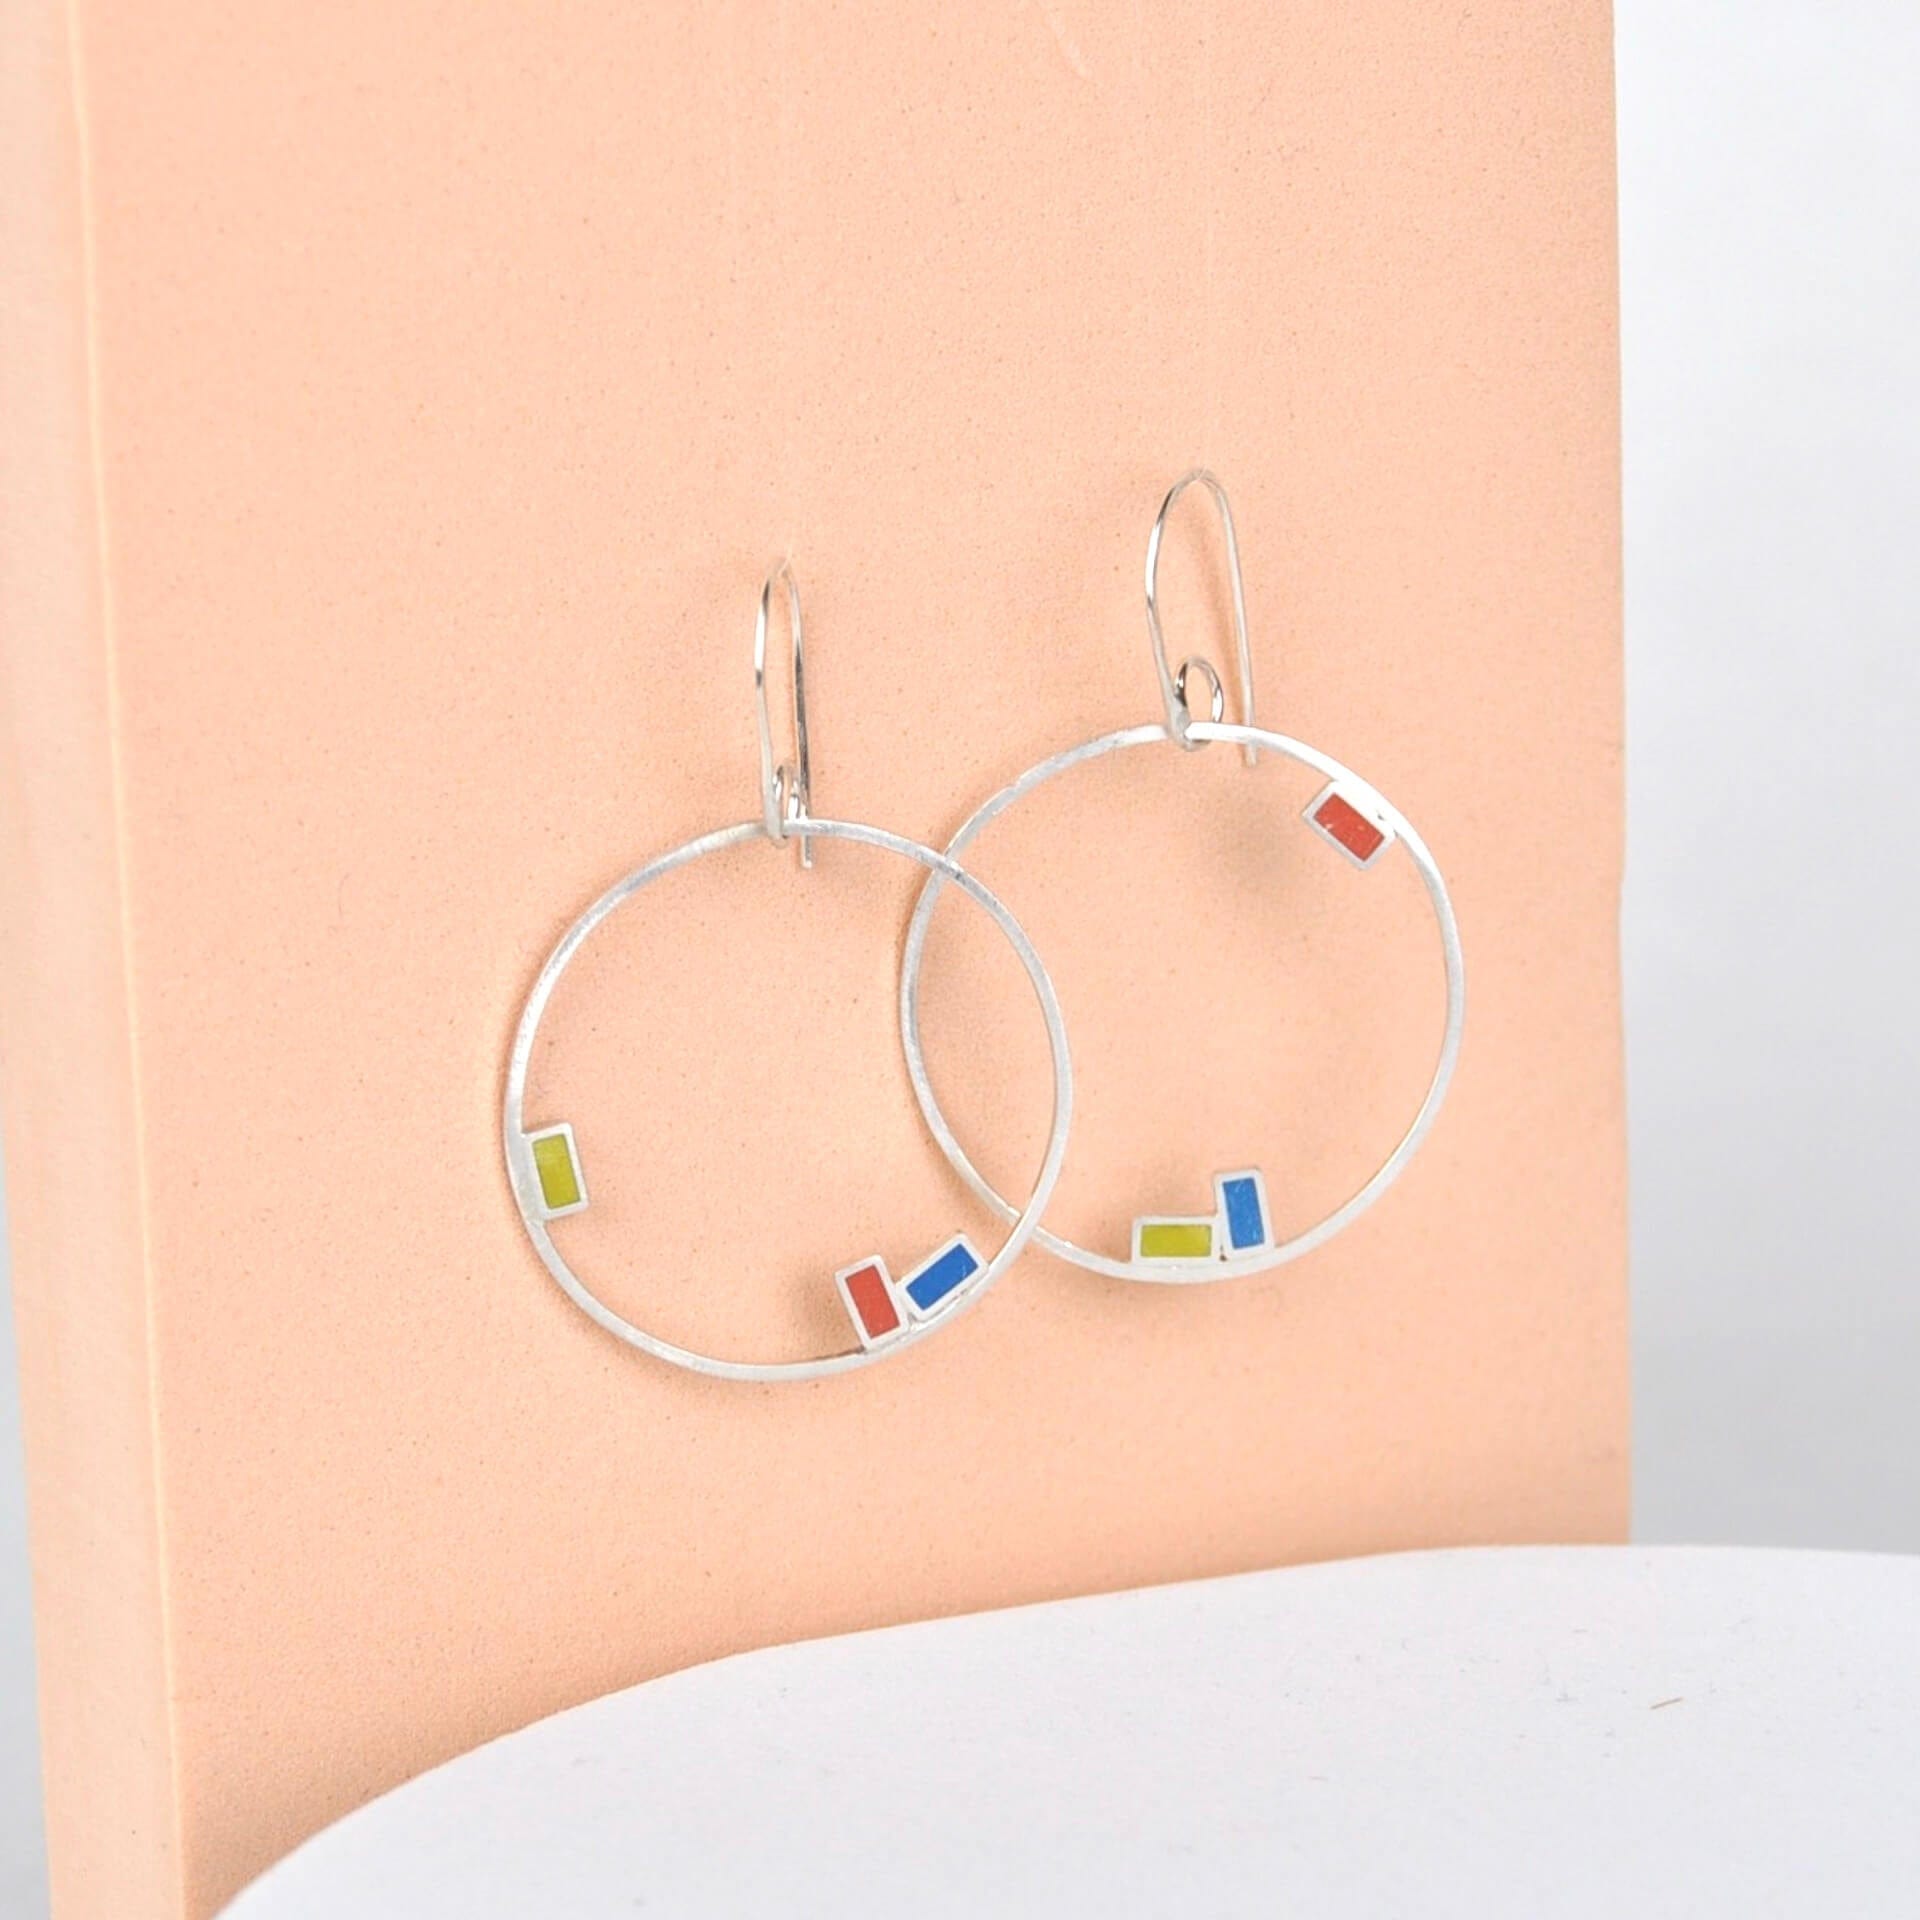 Clare Lloyd Earrings Orange/Blue/Yellow Rectangles Large Inside Dot Hoop Earring